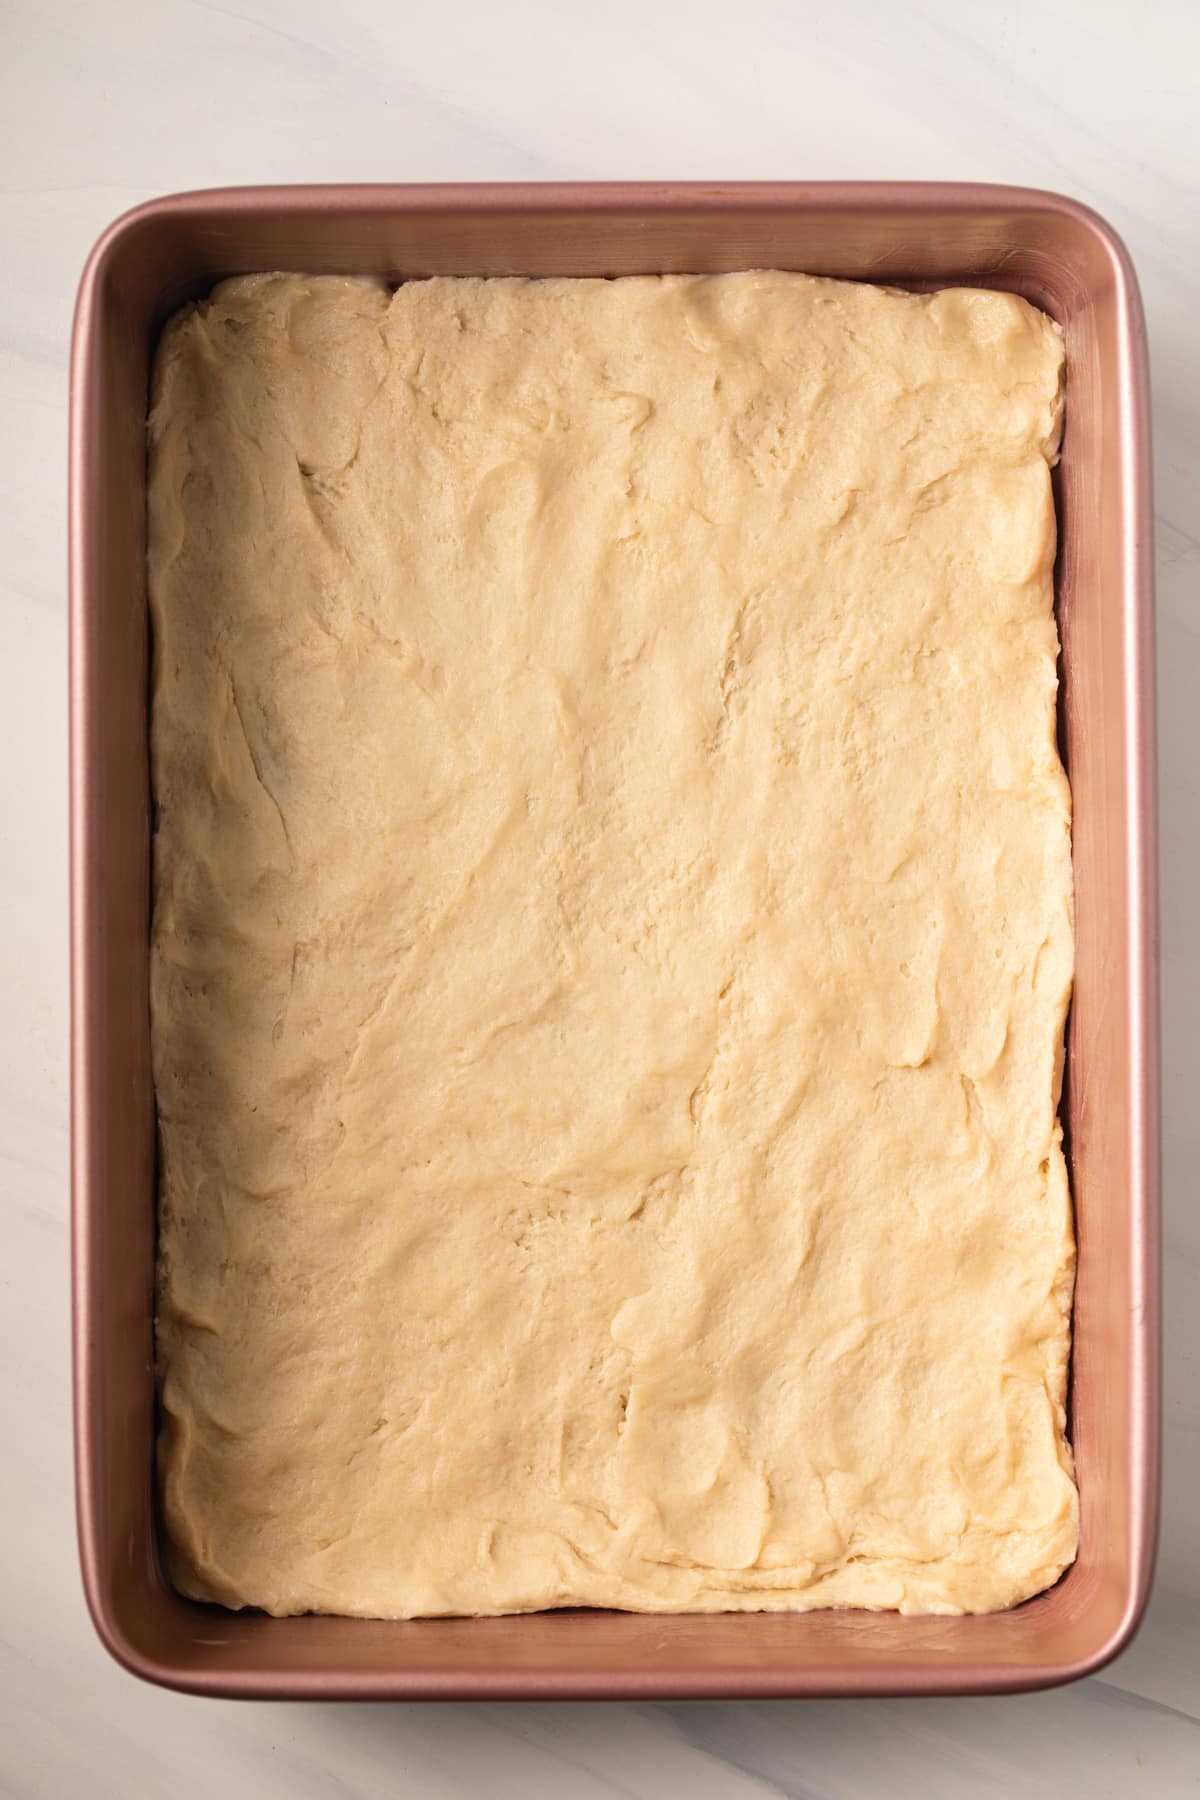 Yeasted cake base in baking pan.